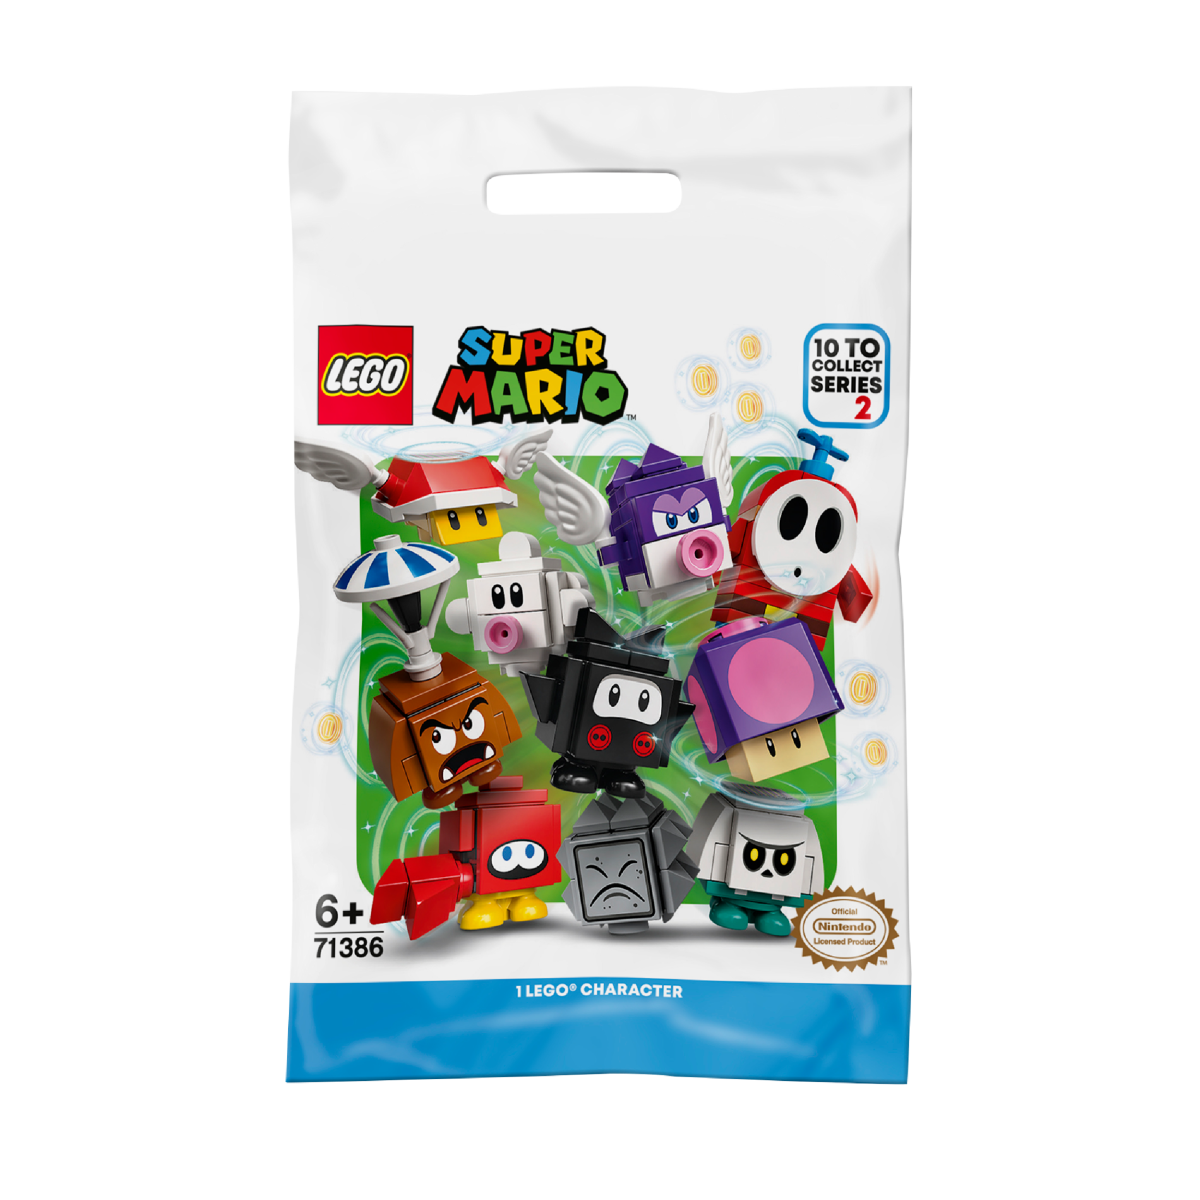 Lego-super-mario-71386-pack-surprise-de-personnage-serie-2-face